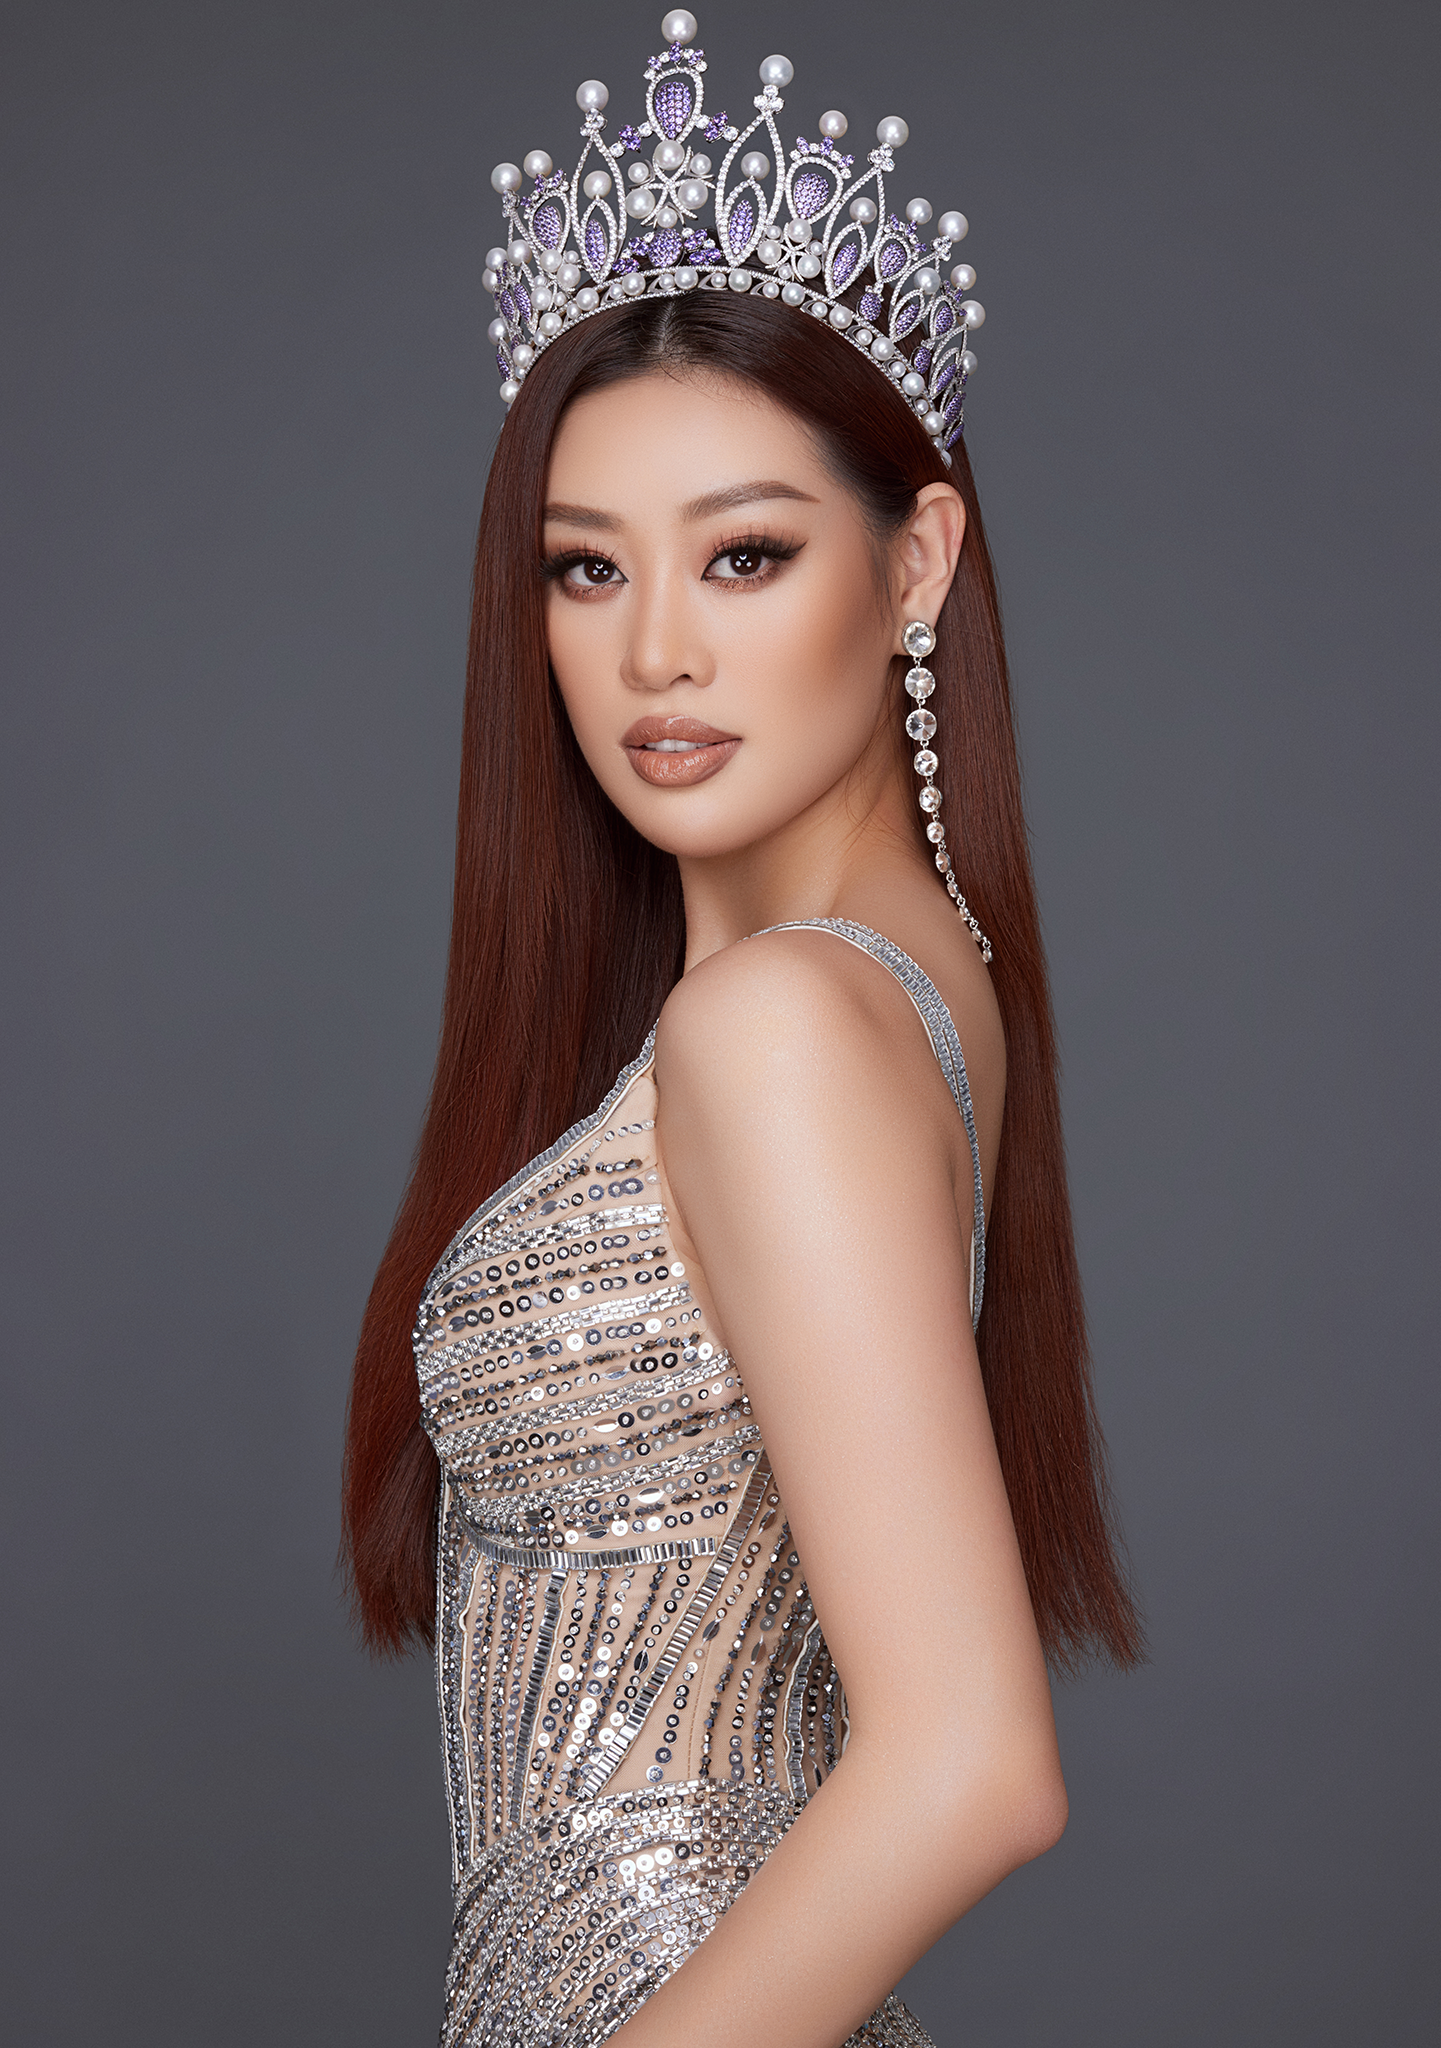 Đồng thời, Hoa hậu Khánh Vân cũng là người đẹp đầu tiên 2 lần giành được giải thưởng “Người đẹp Áo dài” ở Hoa hậu Hoàn vũ Việt Nam 2015 và 2019. Ảnh: Nguyễn Long.